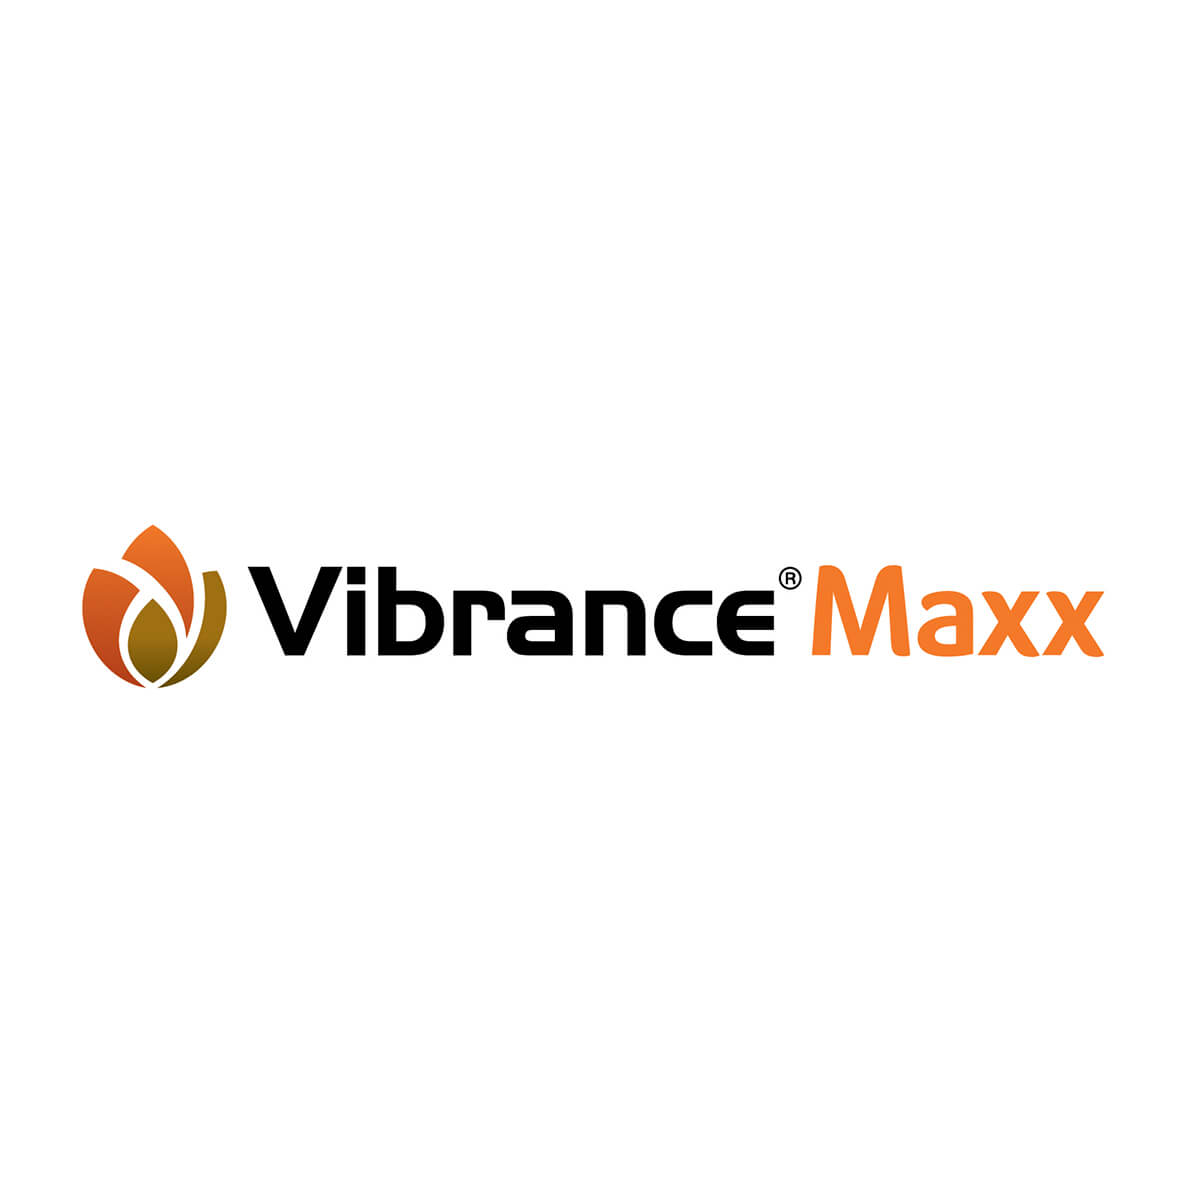 VIBRANCE MAXX RFC 56.78L